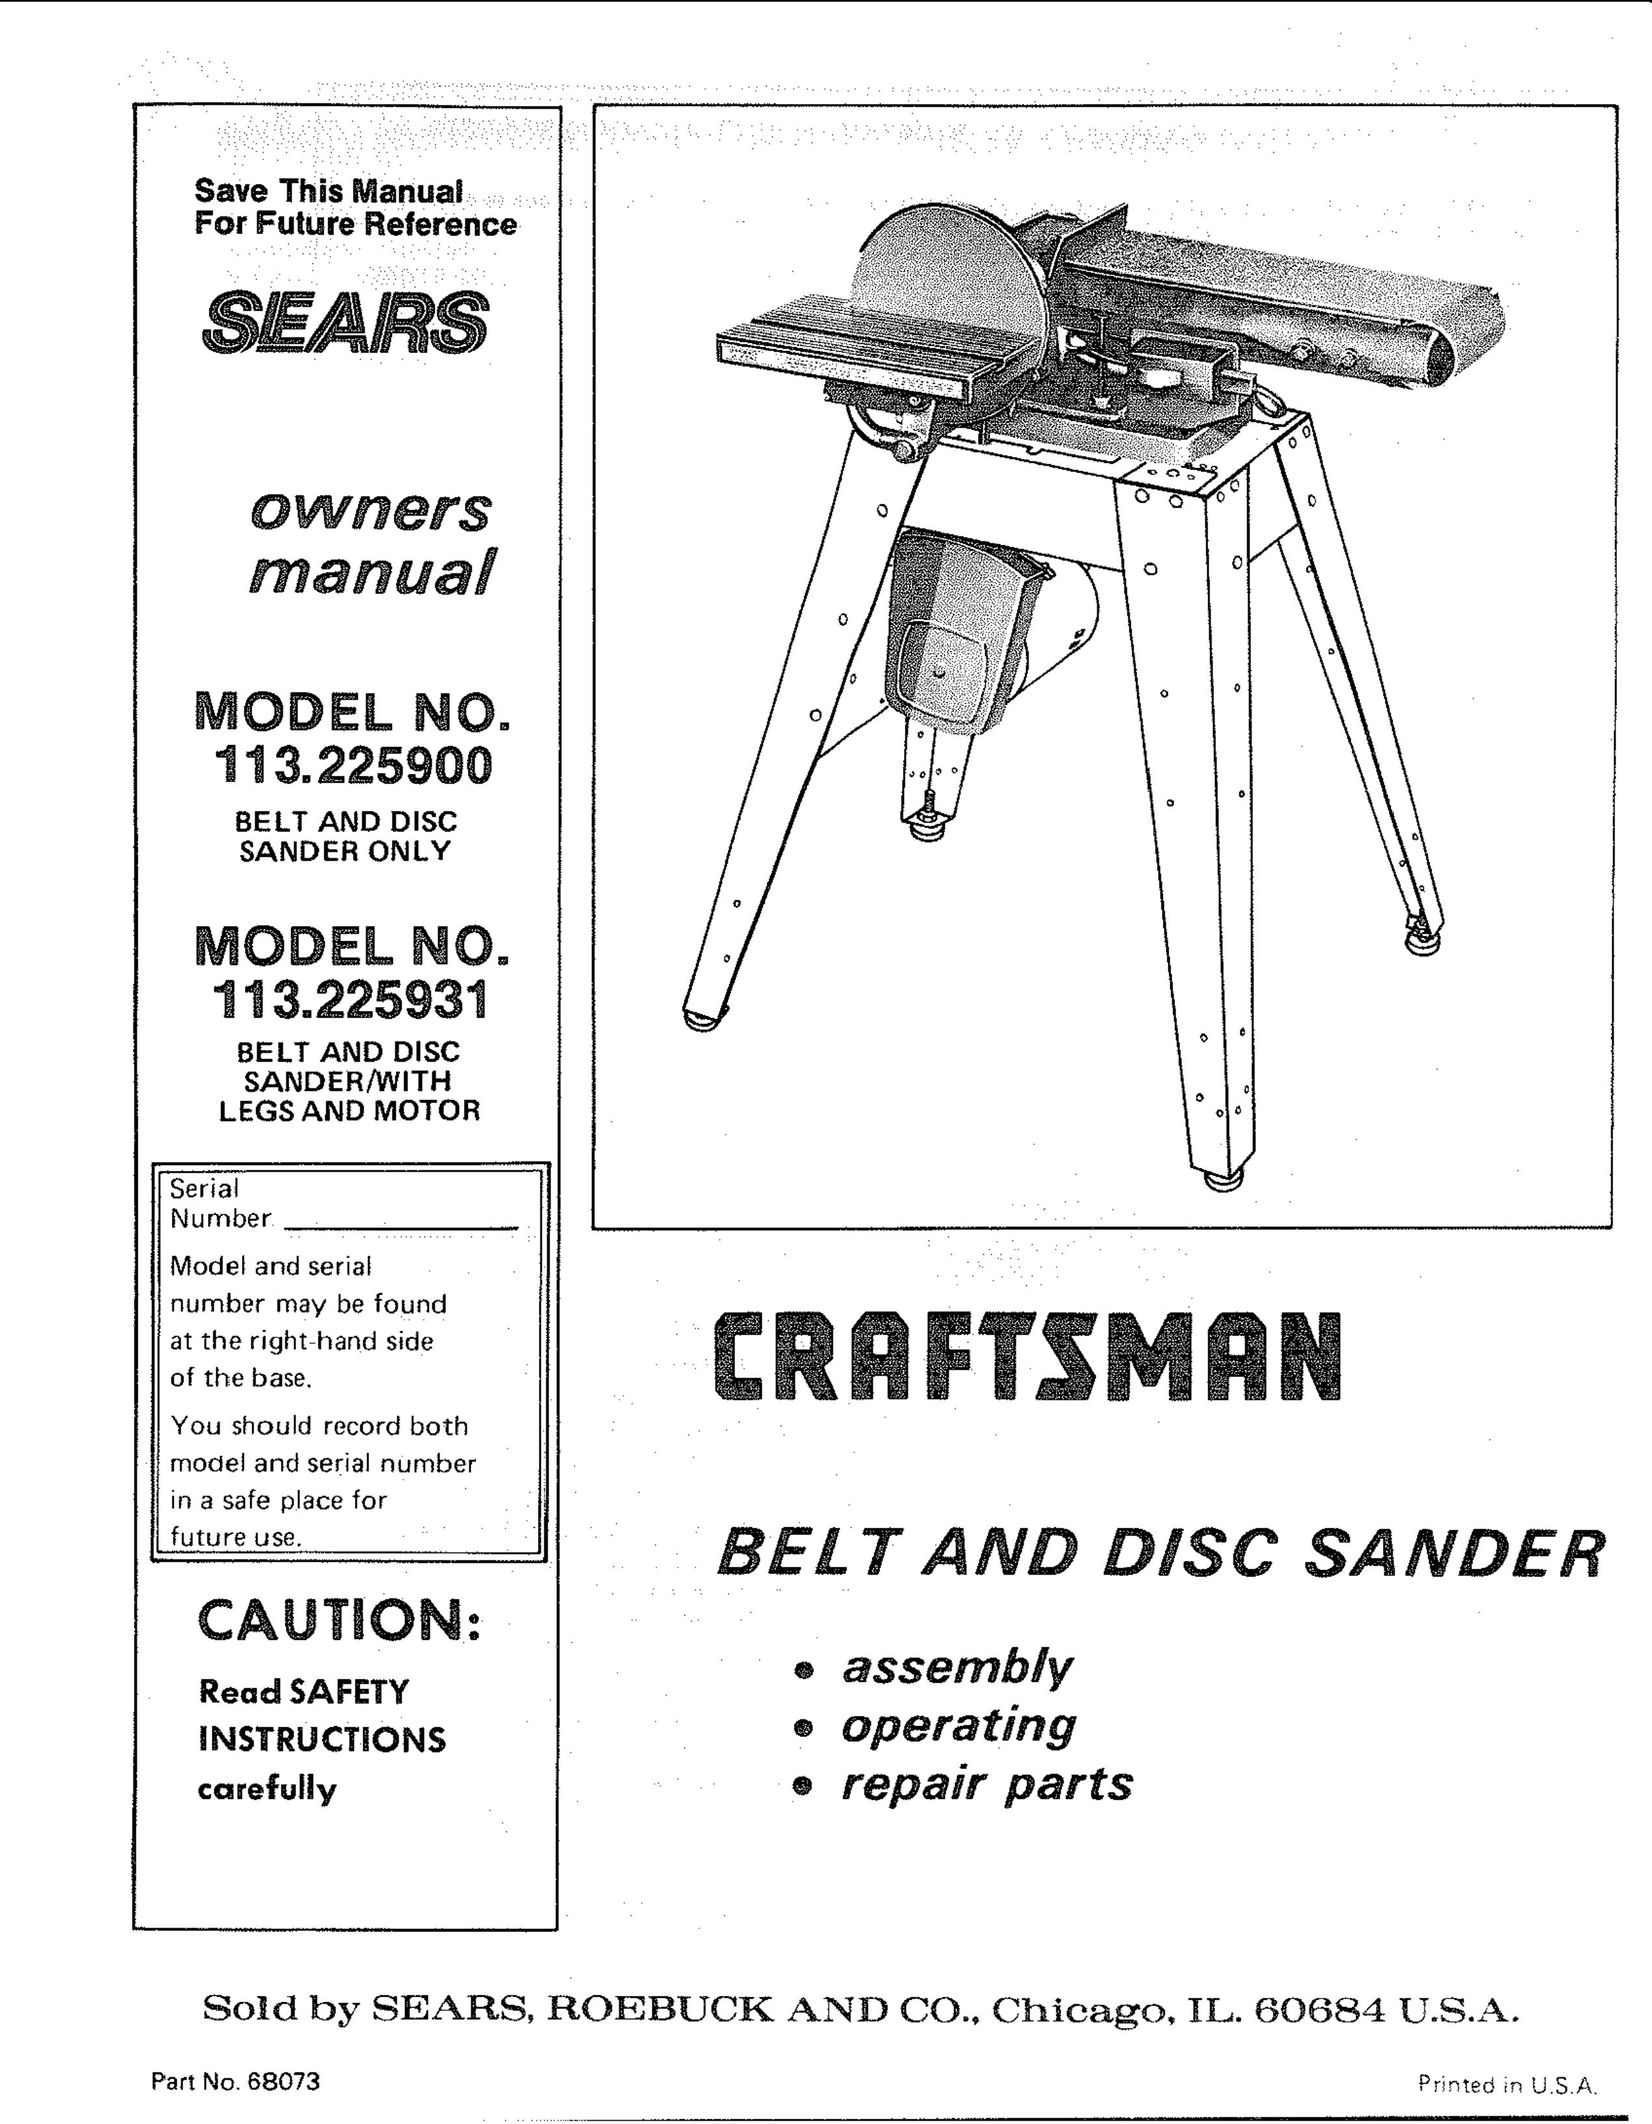 Craftsman 113.225900 Sander User Manual